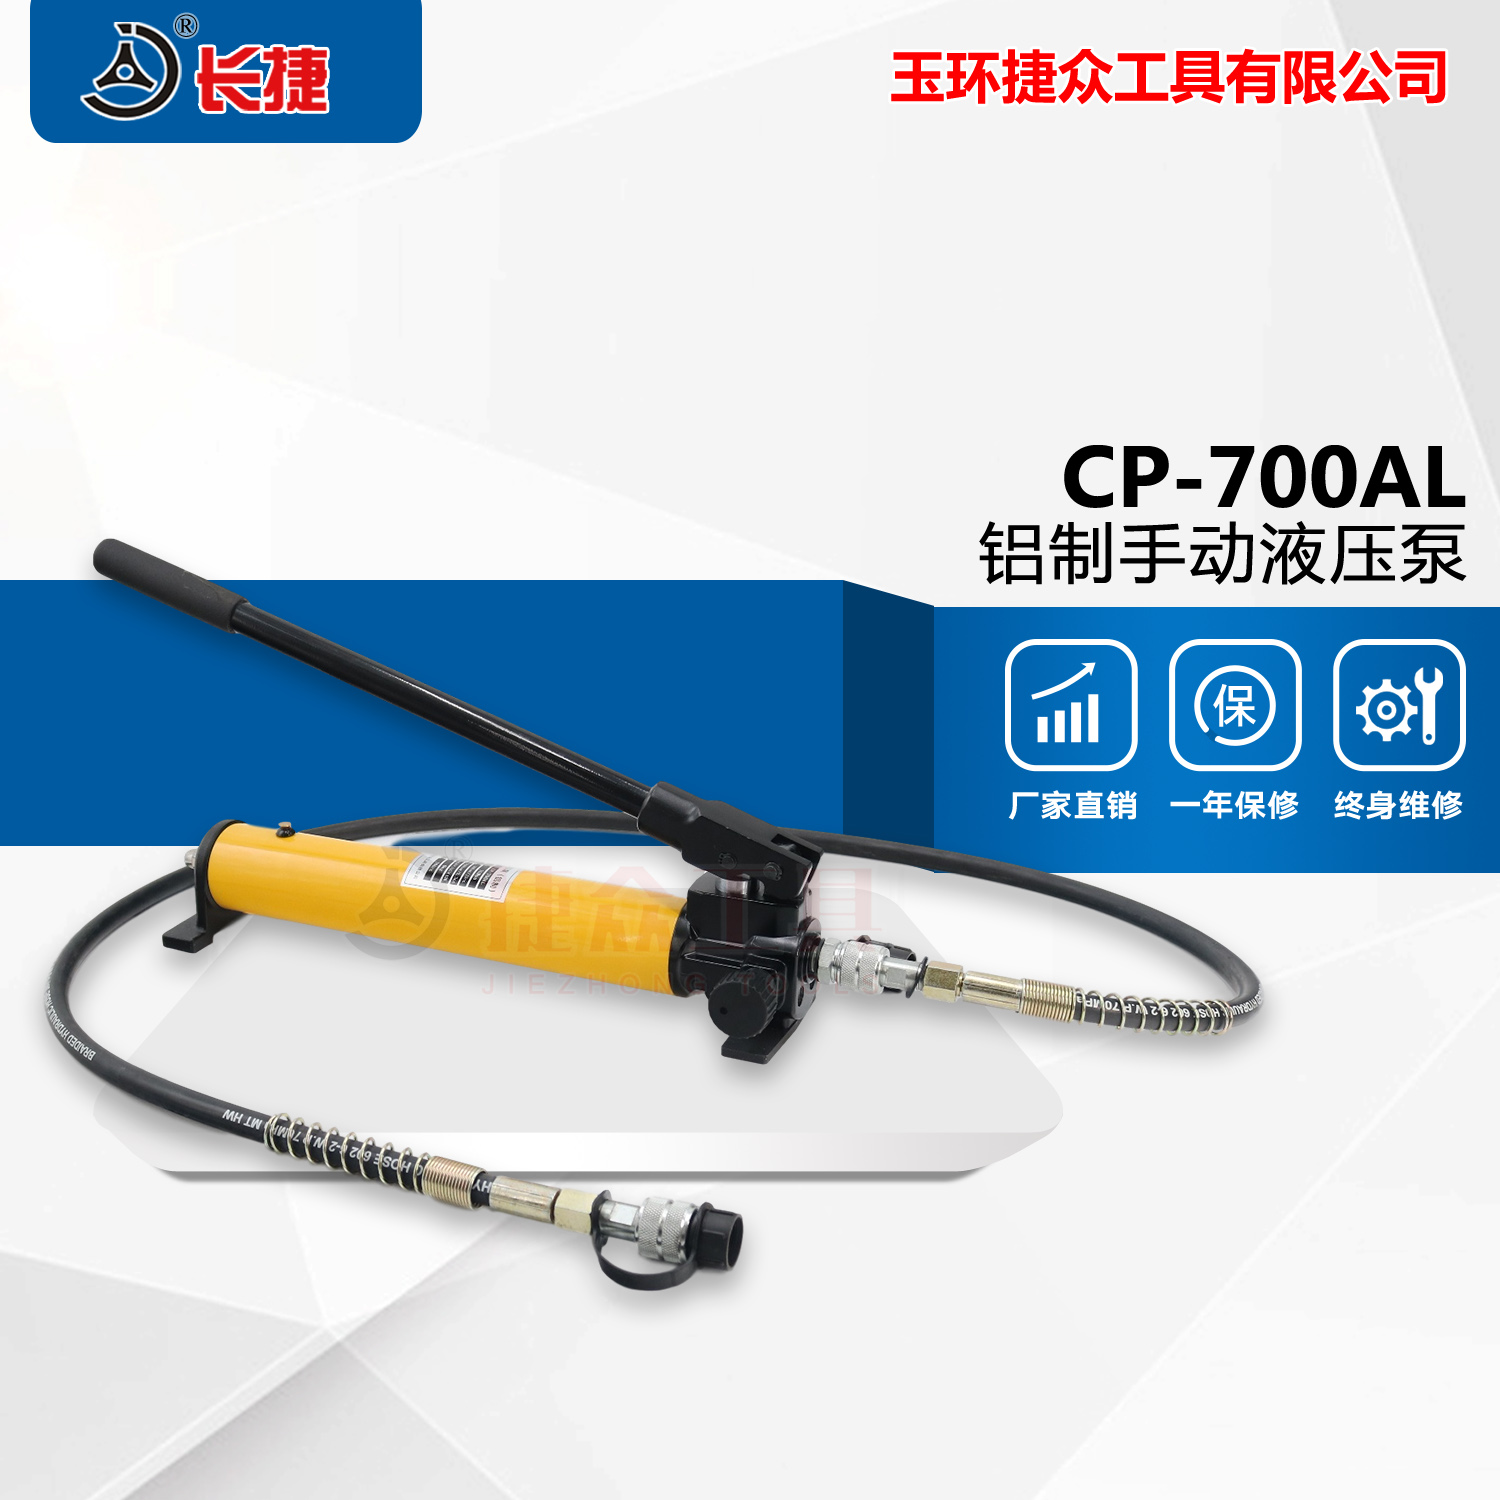 长捷牌 铝制手动液压泵CP-700AL 铝合金结构轻便 二段式液压设计